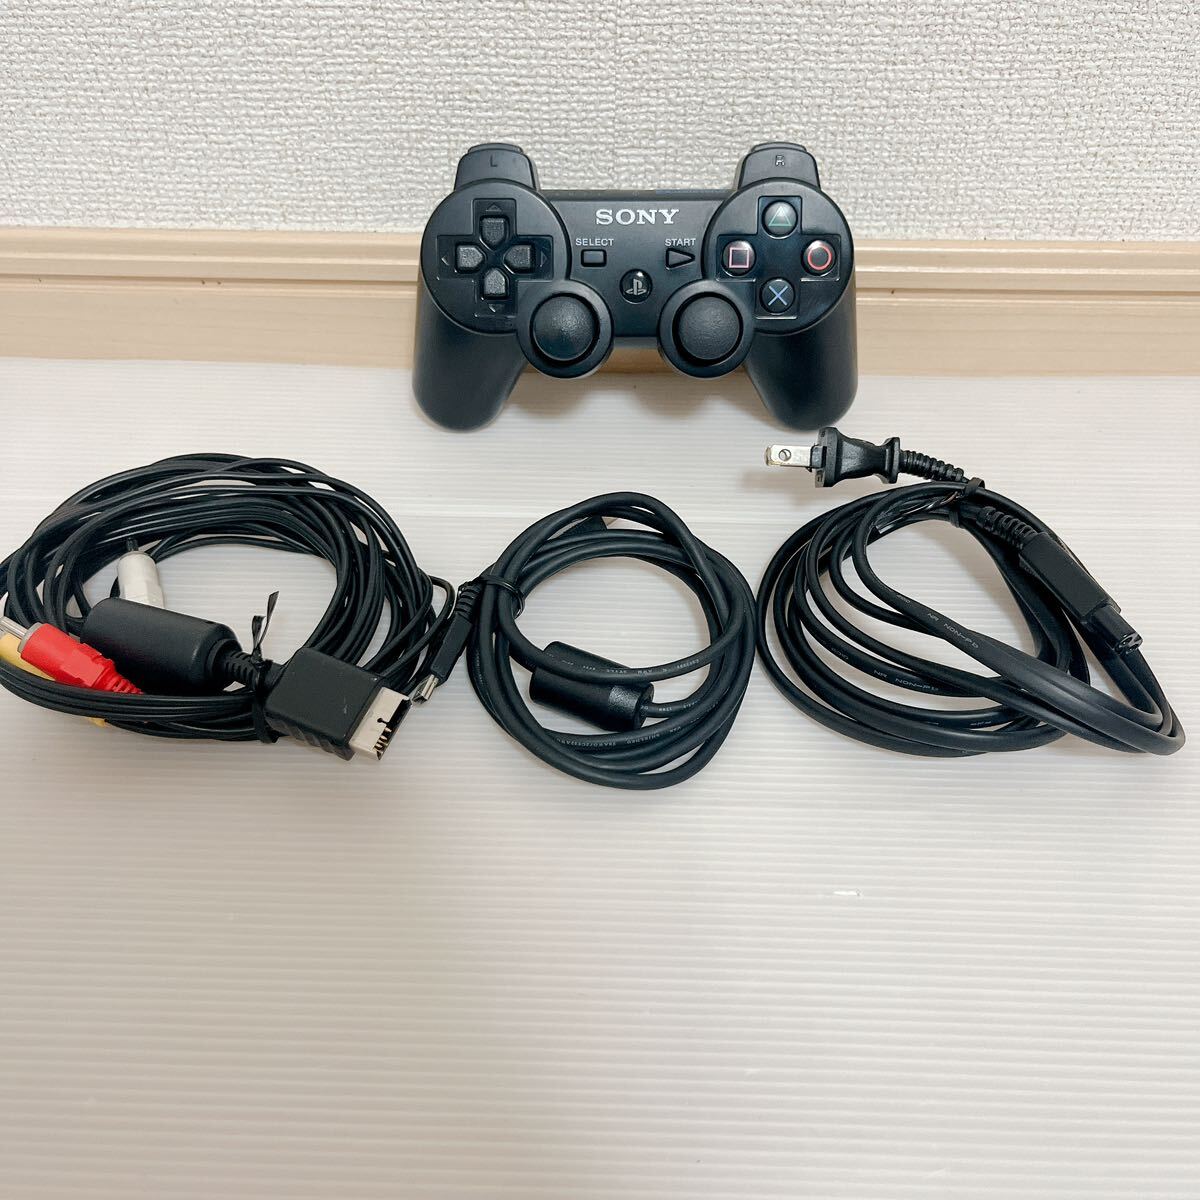  рабочее состояние подтверждено PS3 контроллер CECHZC2J черный палочка немного бойцовая рыбка есть есть SONY беспроводной контроллер кабель комплект A550